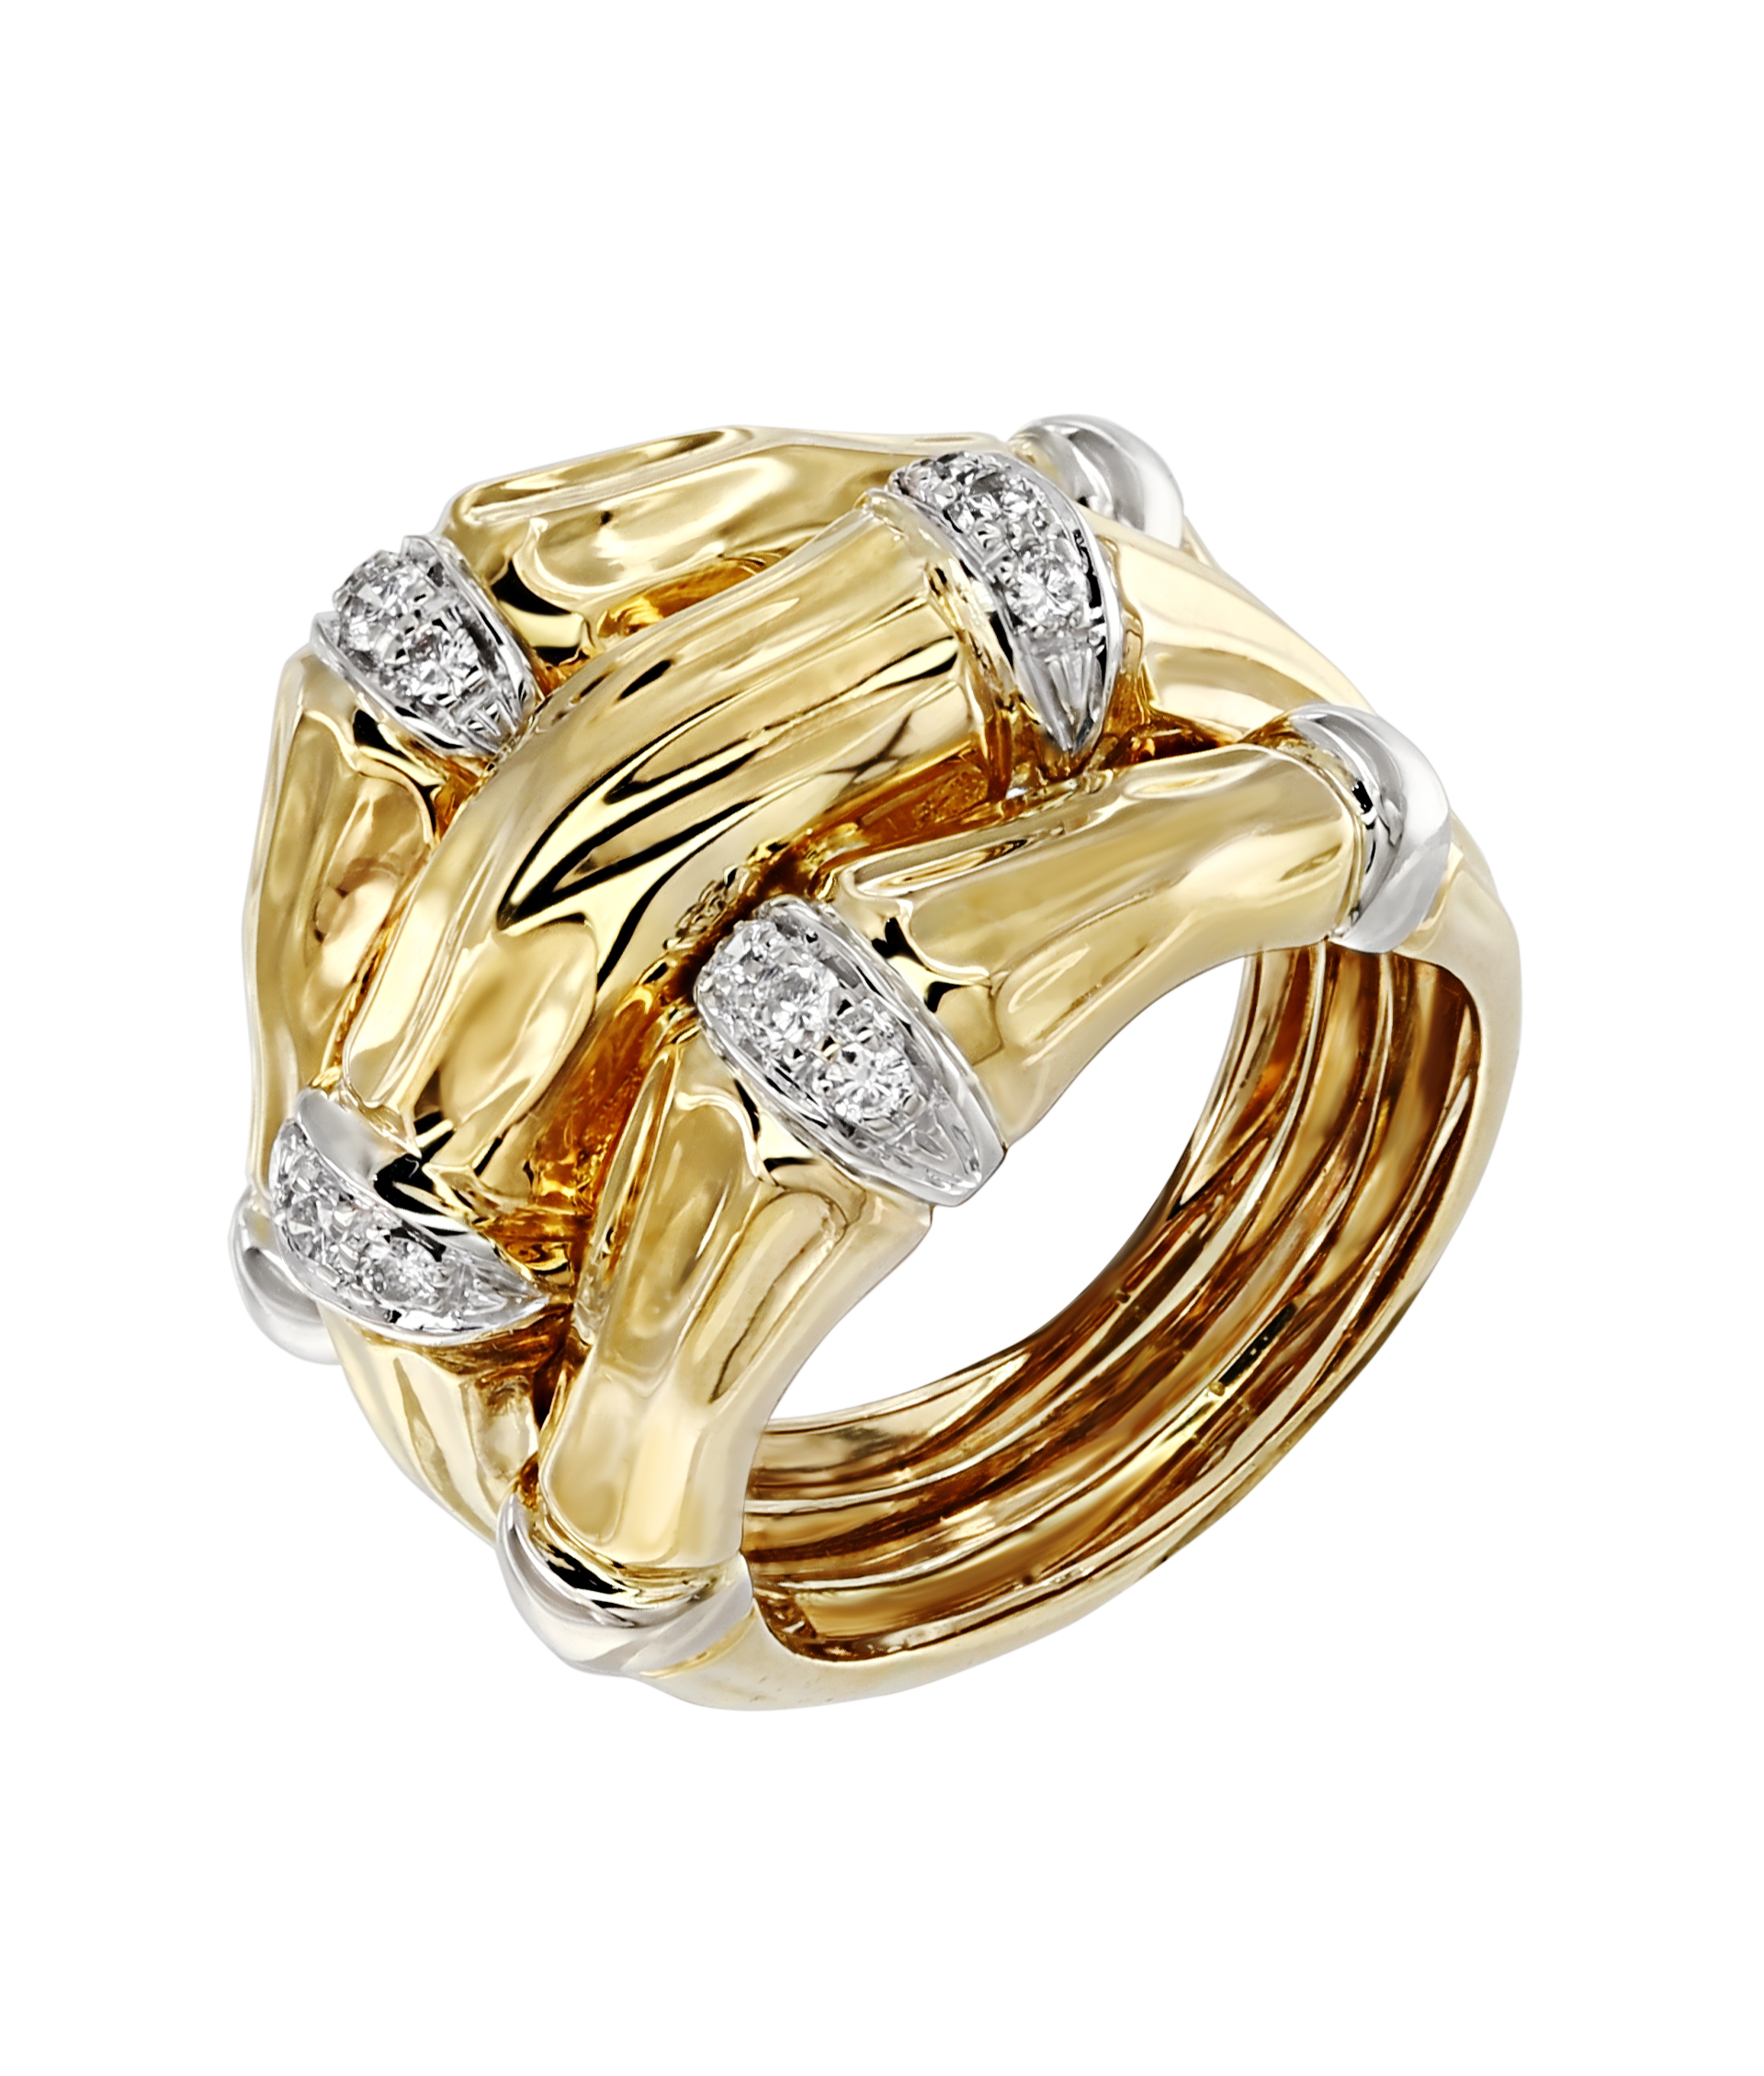 Ломбарды золотых колец купить. R1041-2002 кольцо с бриллиантами из жёлтого золота Сенат. R1069-2002 кольцо с бриллиантами из жёлтого золота Сенат. Массивные кольца. Итальянские кольца из золота.